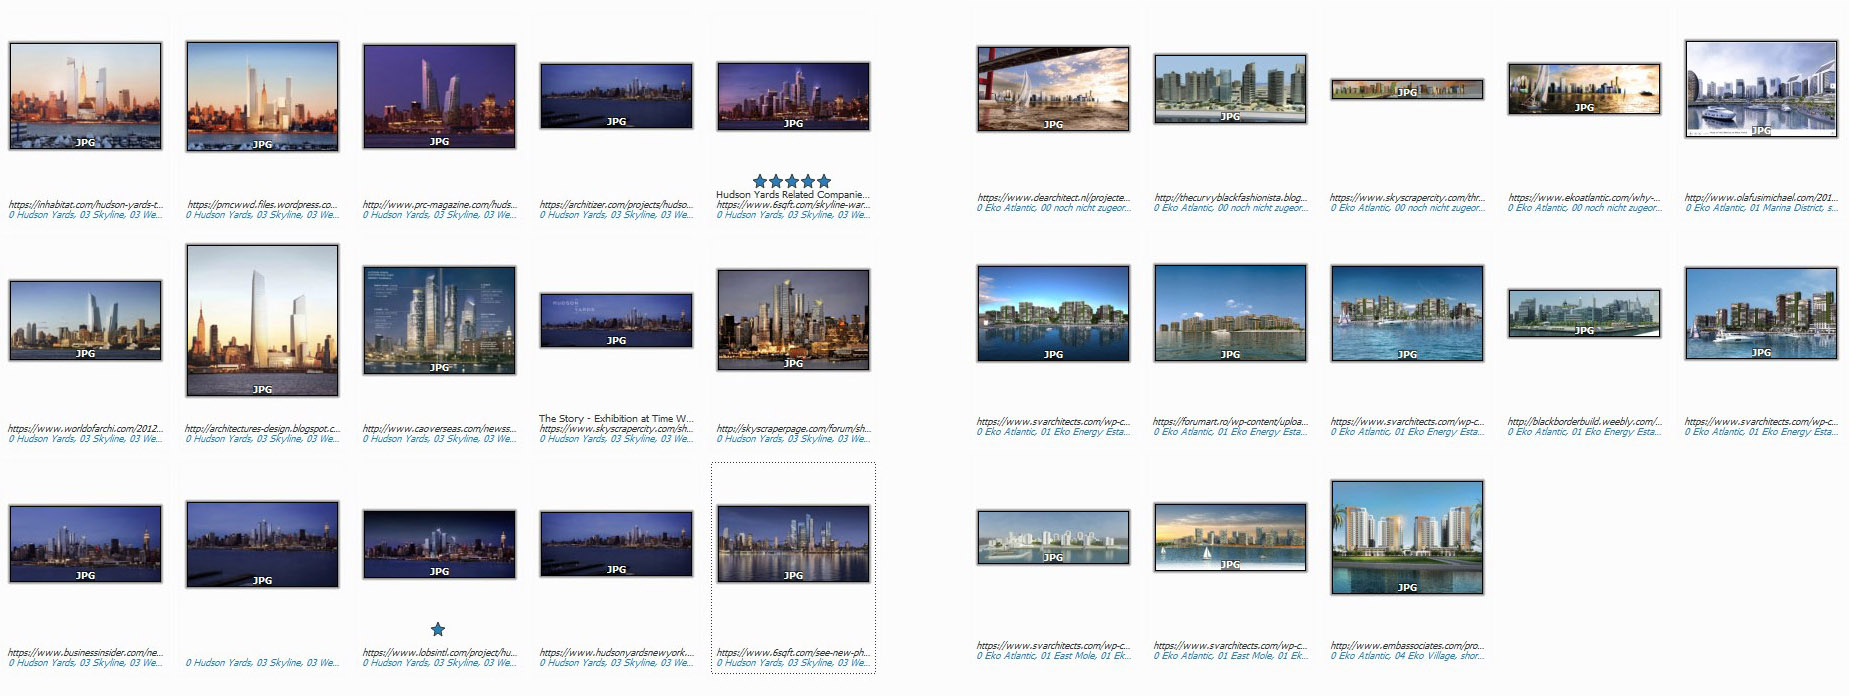 Abb. 7	Screenshots der Bilddatenbanken von Hudson Yards (links) und Eko Atlantic (rechts) (Quelle: Autorin)